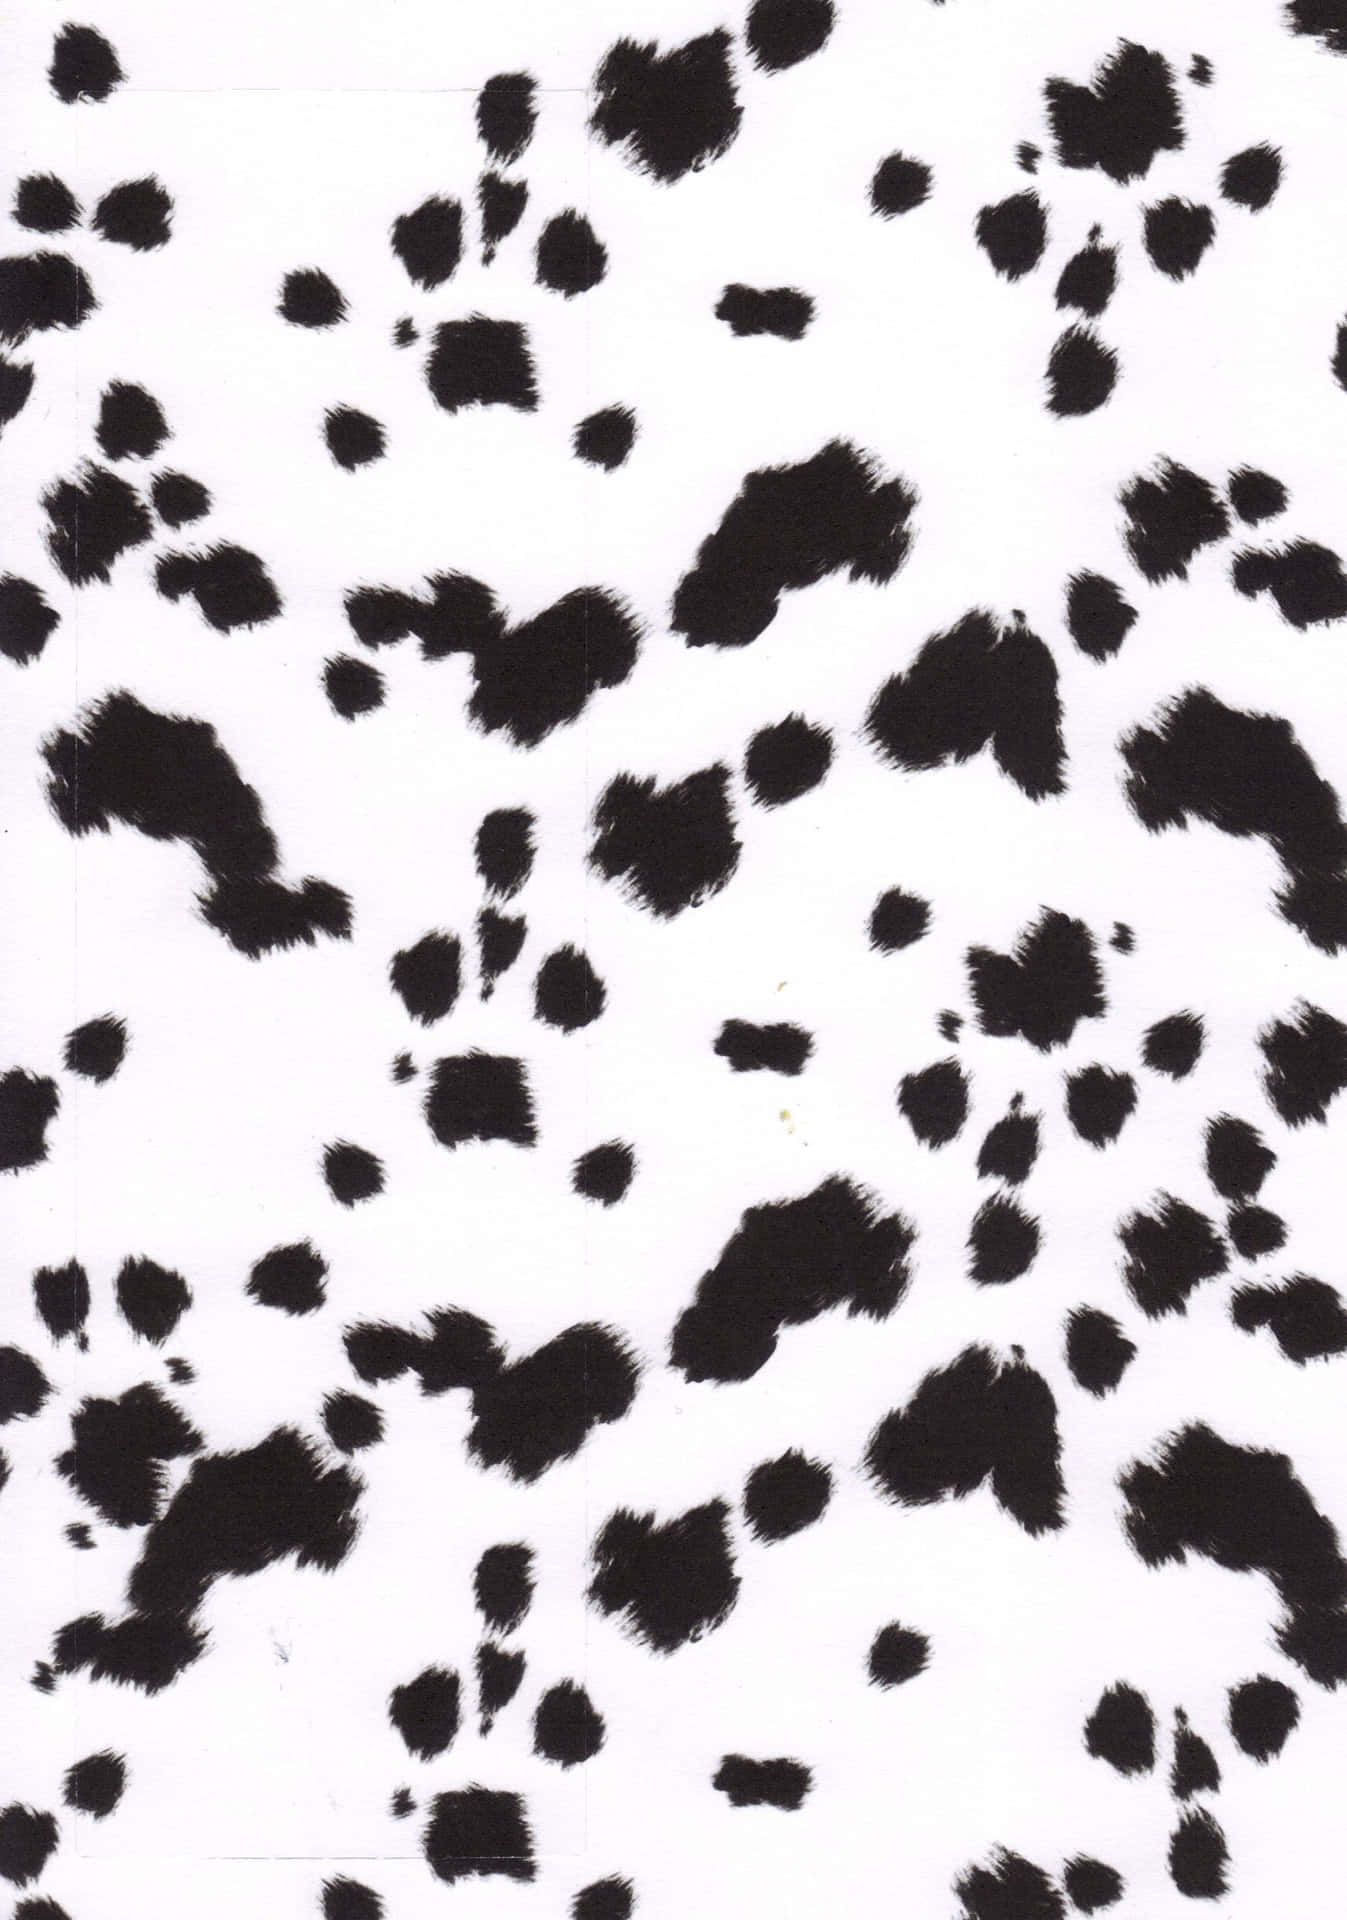 A sea of black dots Wallpaper